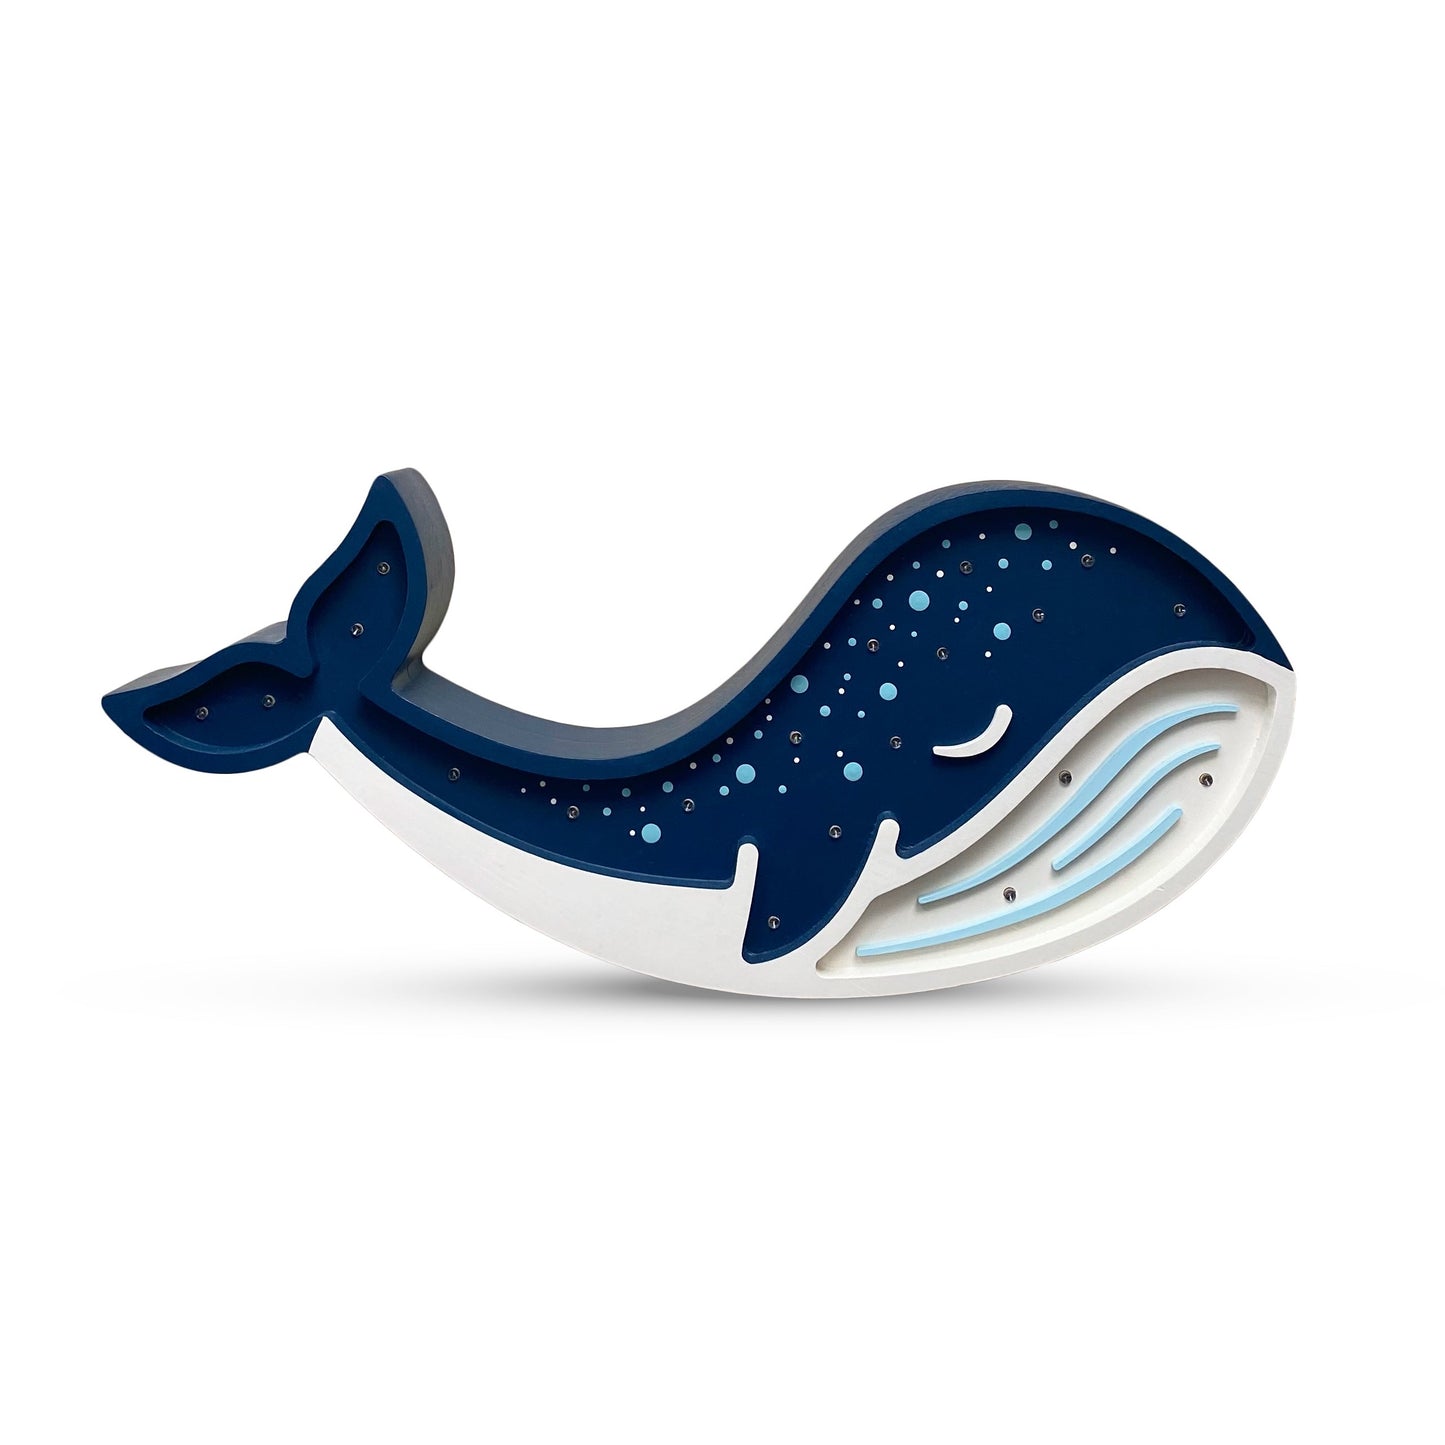 Kinderlampe Whale blau | PEEKABOOLIGHTS | Handarbeit